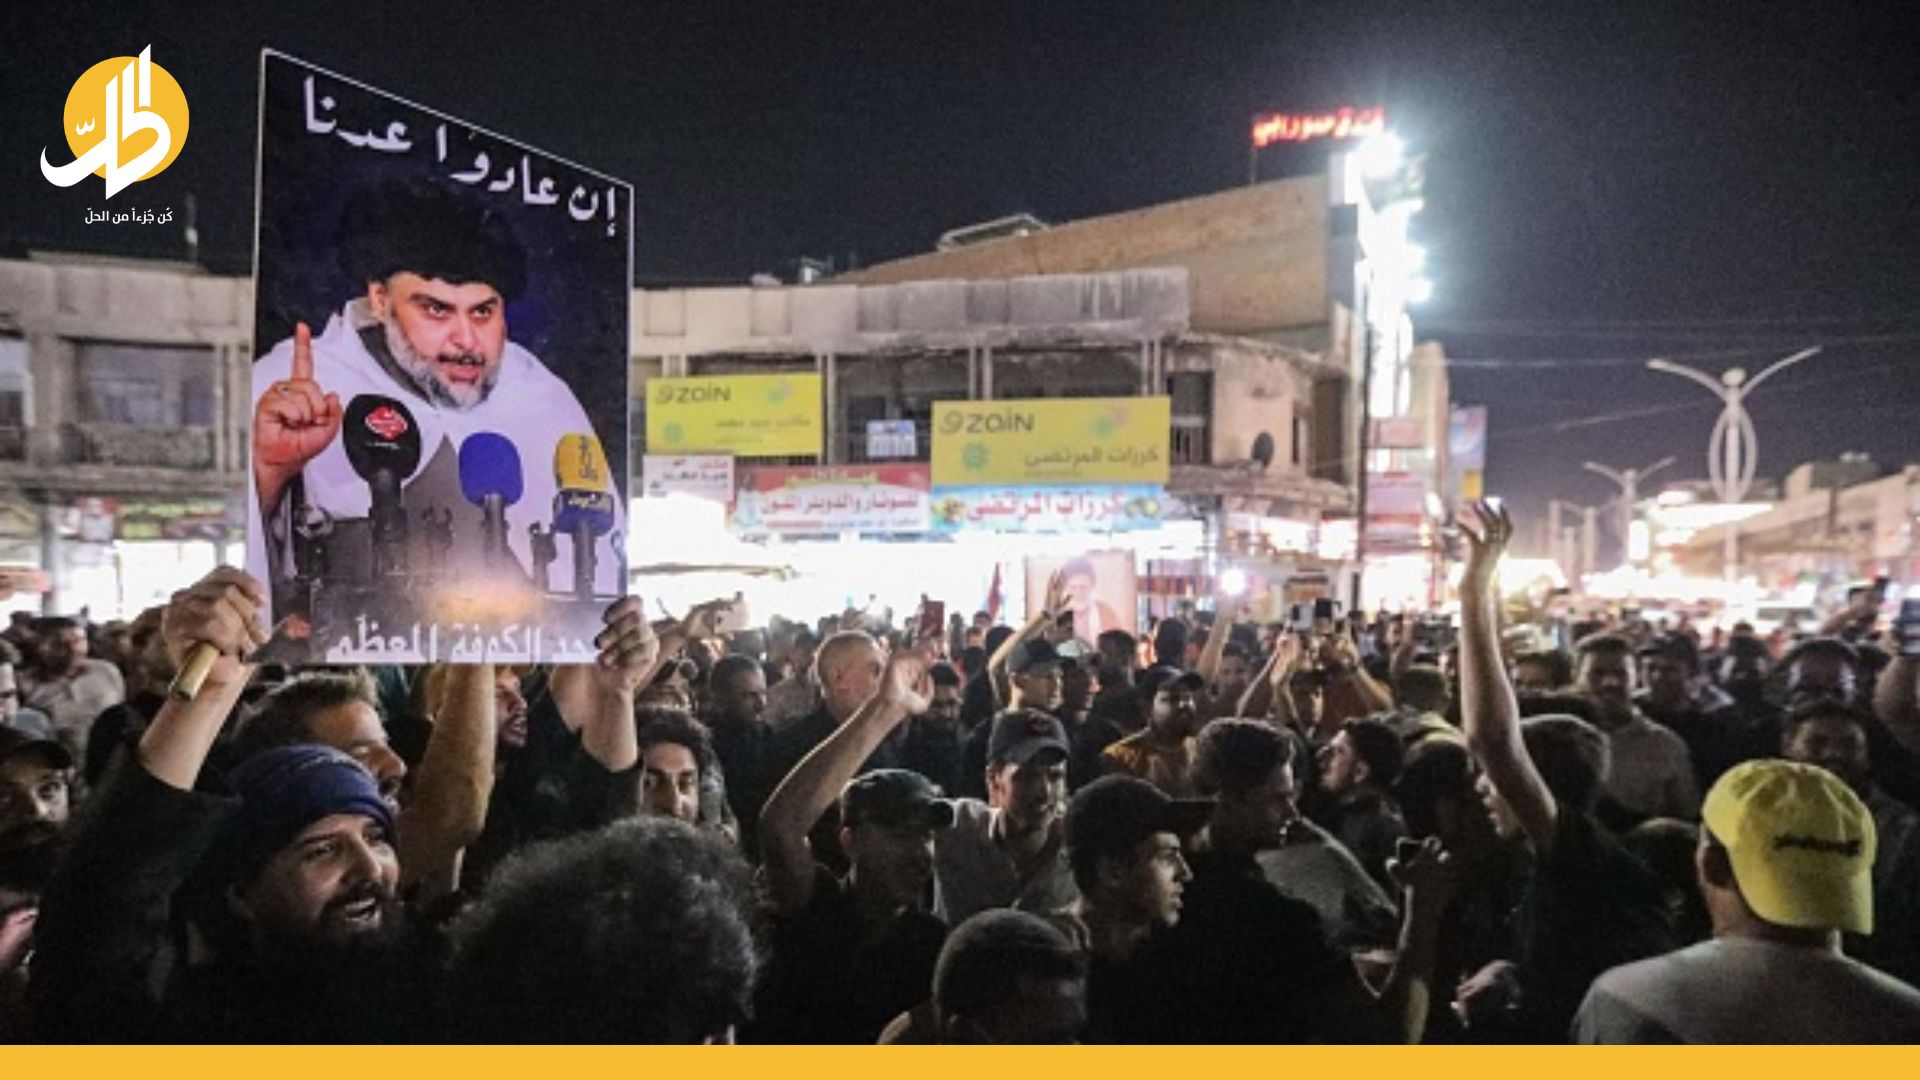 العراق.. الصدر يلمّح بـ “ثورة إصلاح” بعد “جرّة الإذن”